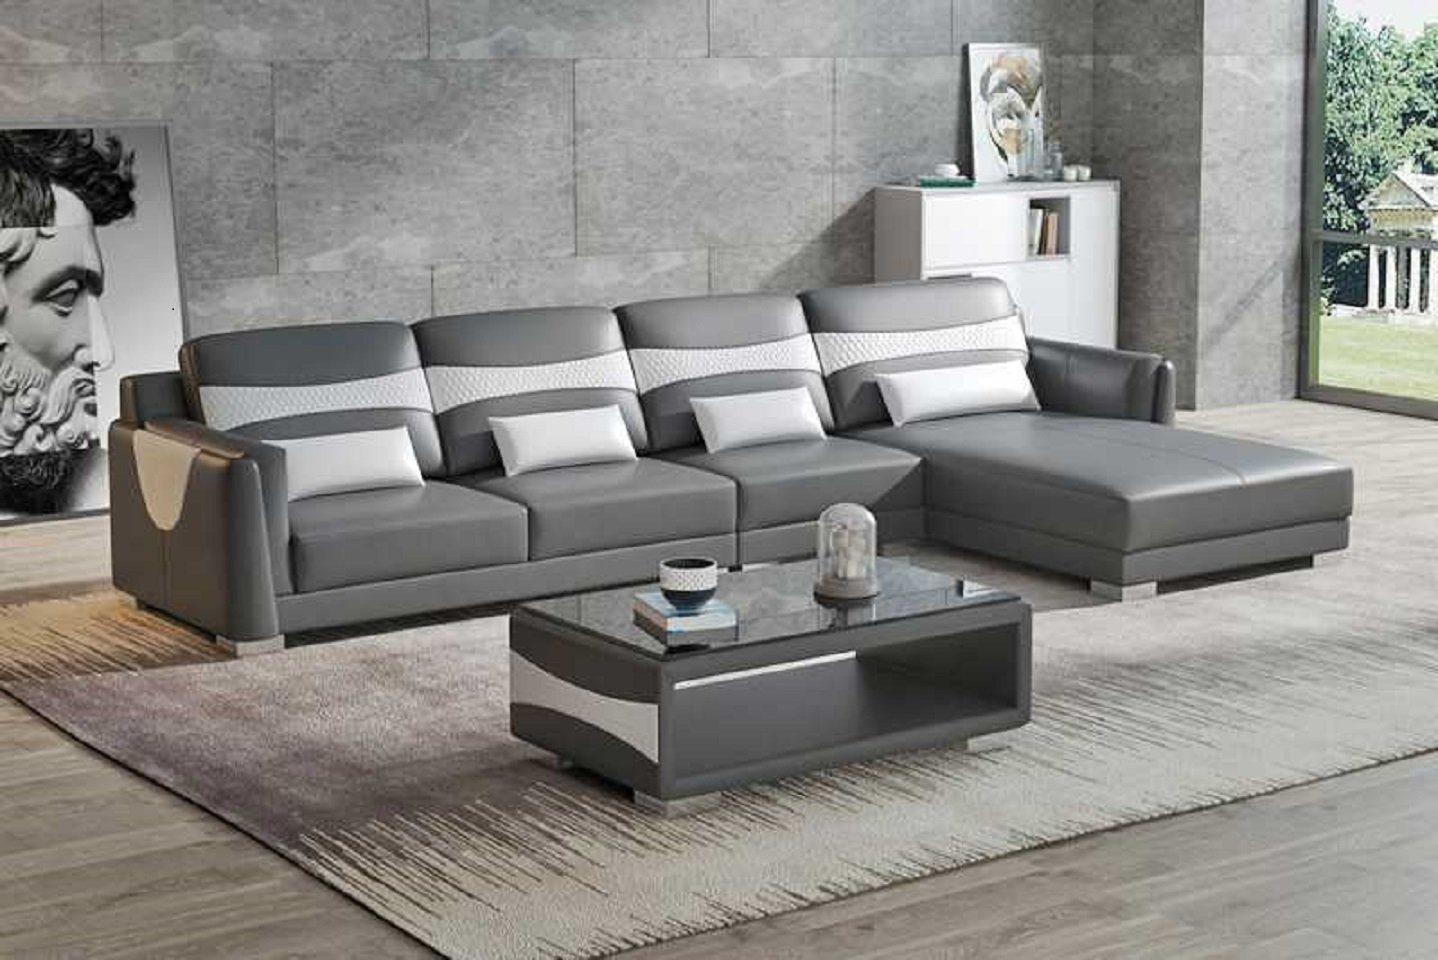 JVmoebel Ecksofa Luxus Eckgarnitur Ecksofa L Form Liege Couch Sofa Wohnzimmer Neu, 3 Teile, Made in Europe Grau